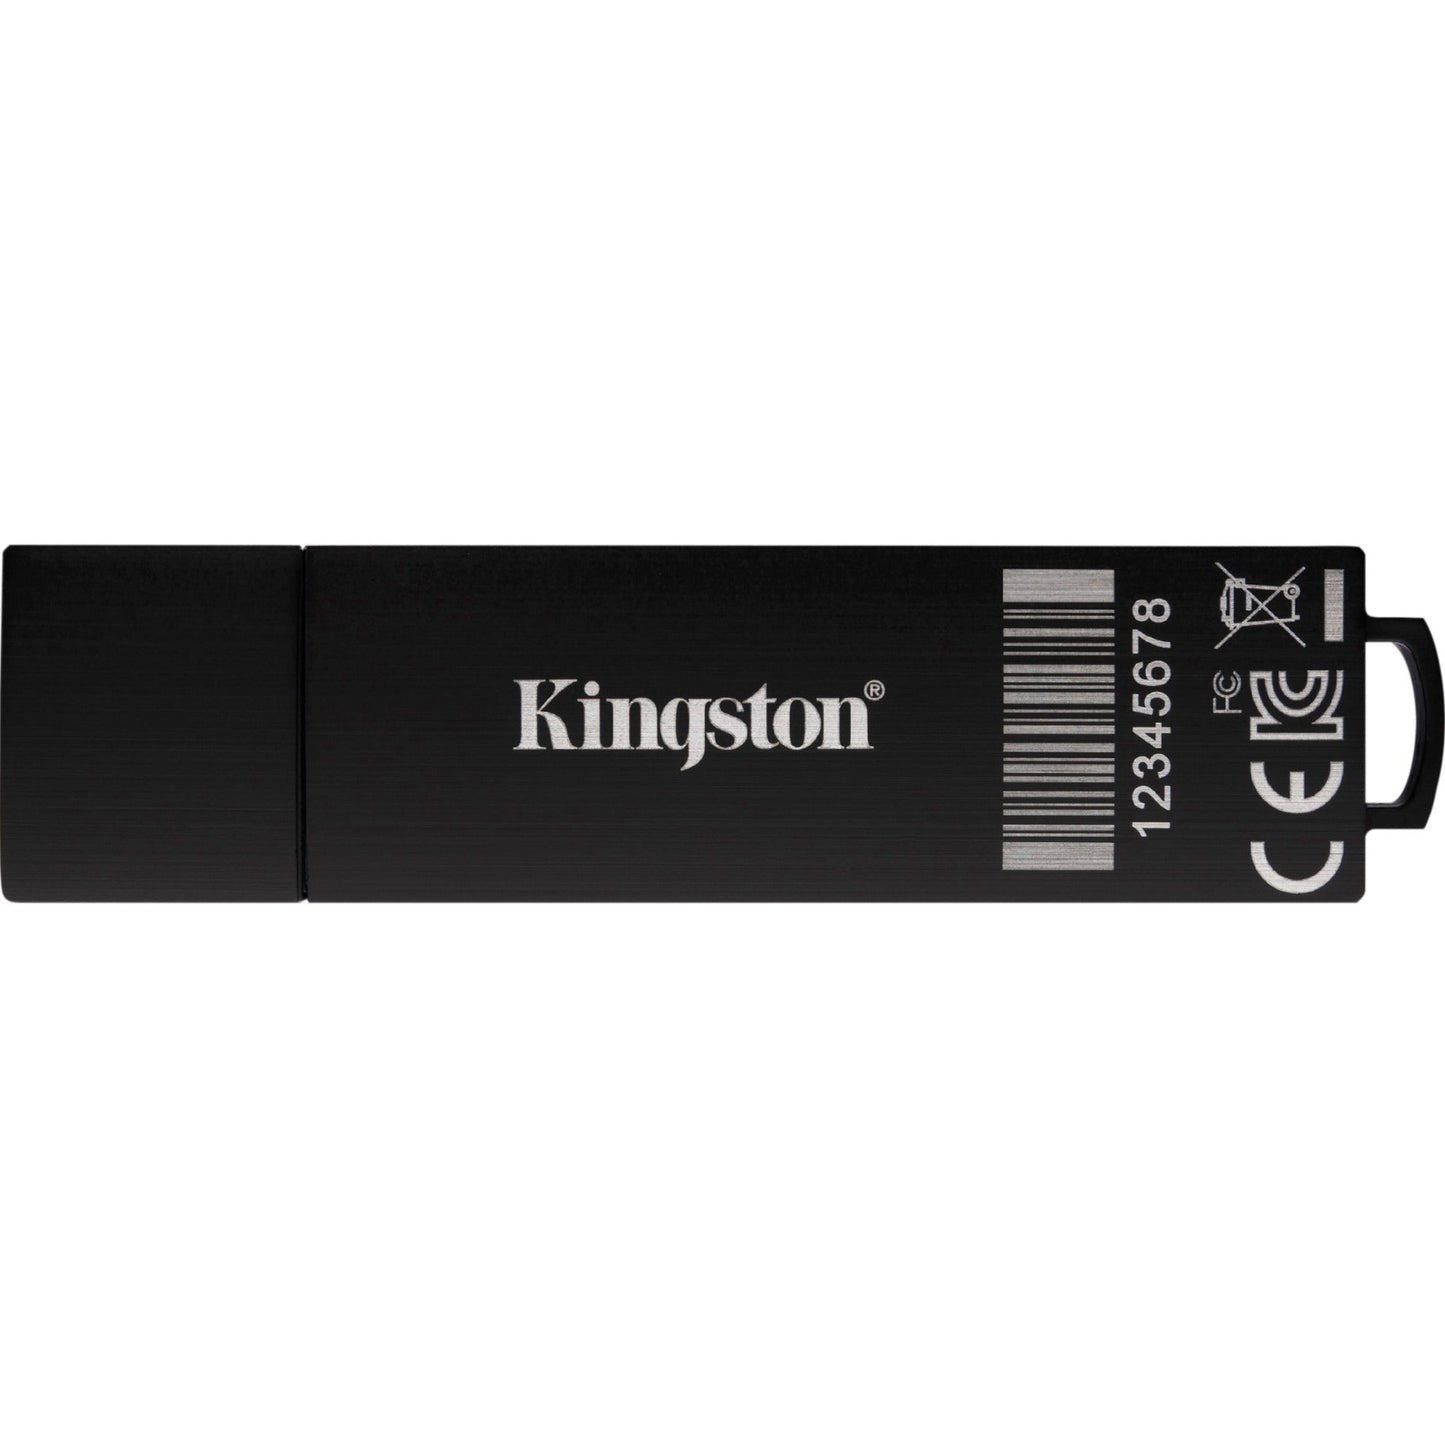 IronKey 8GB D300SM USB 3.1 Flash Drive